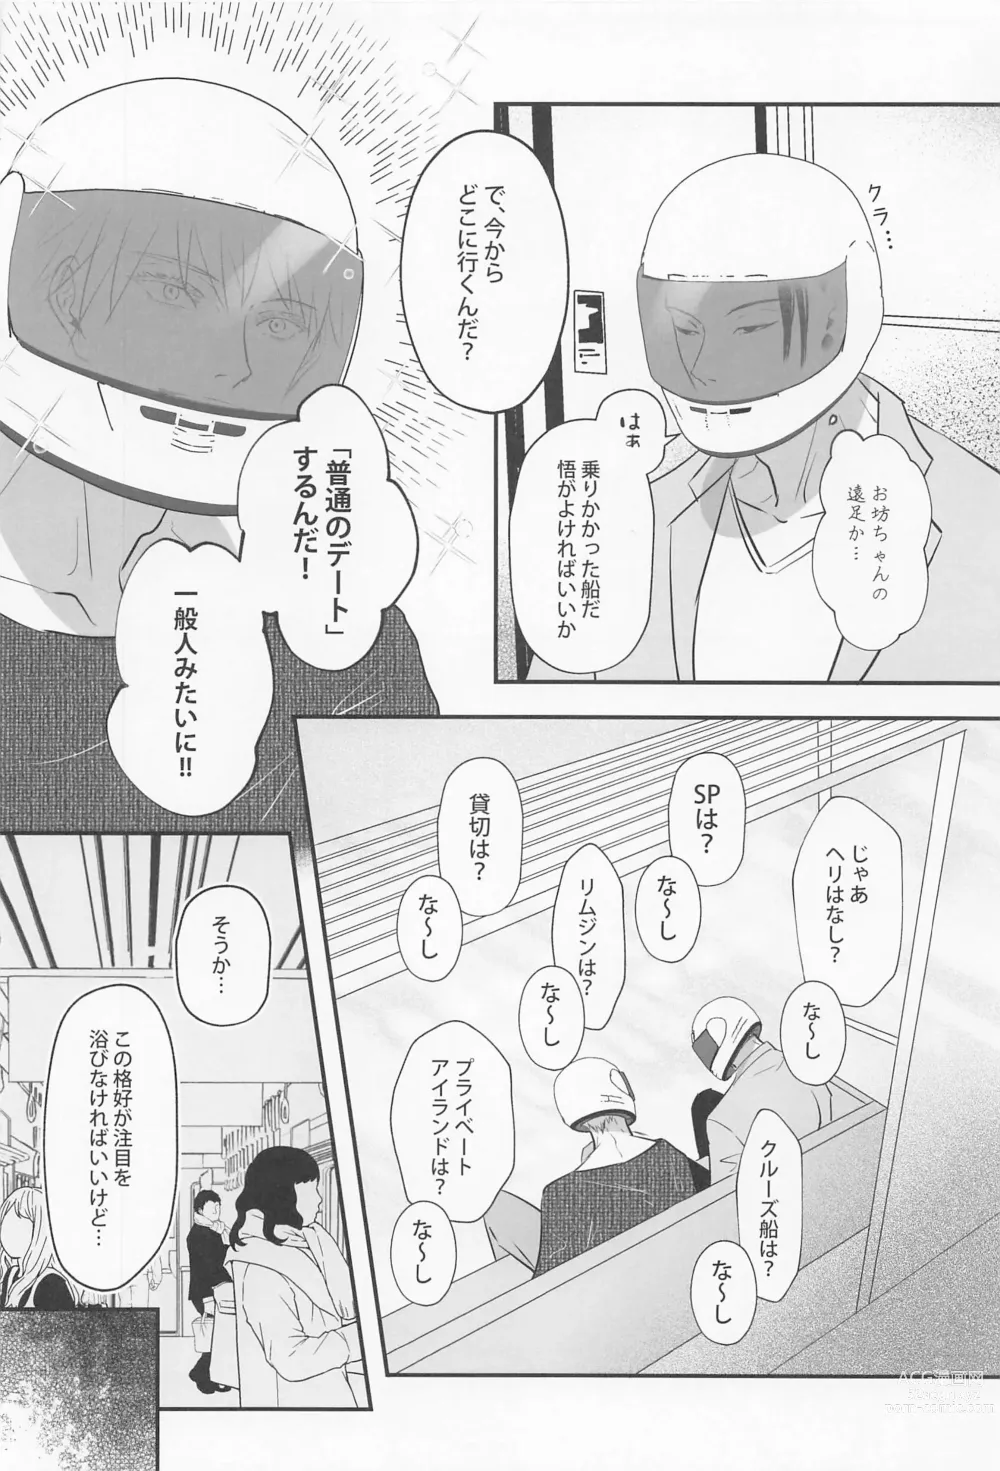 Page 17 of doujinshi Baka ni Naruhodo Koi ni Obore